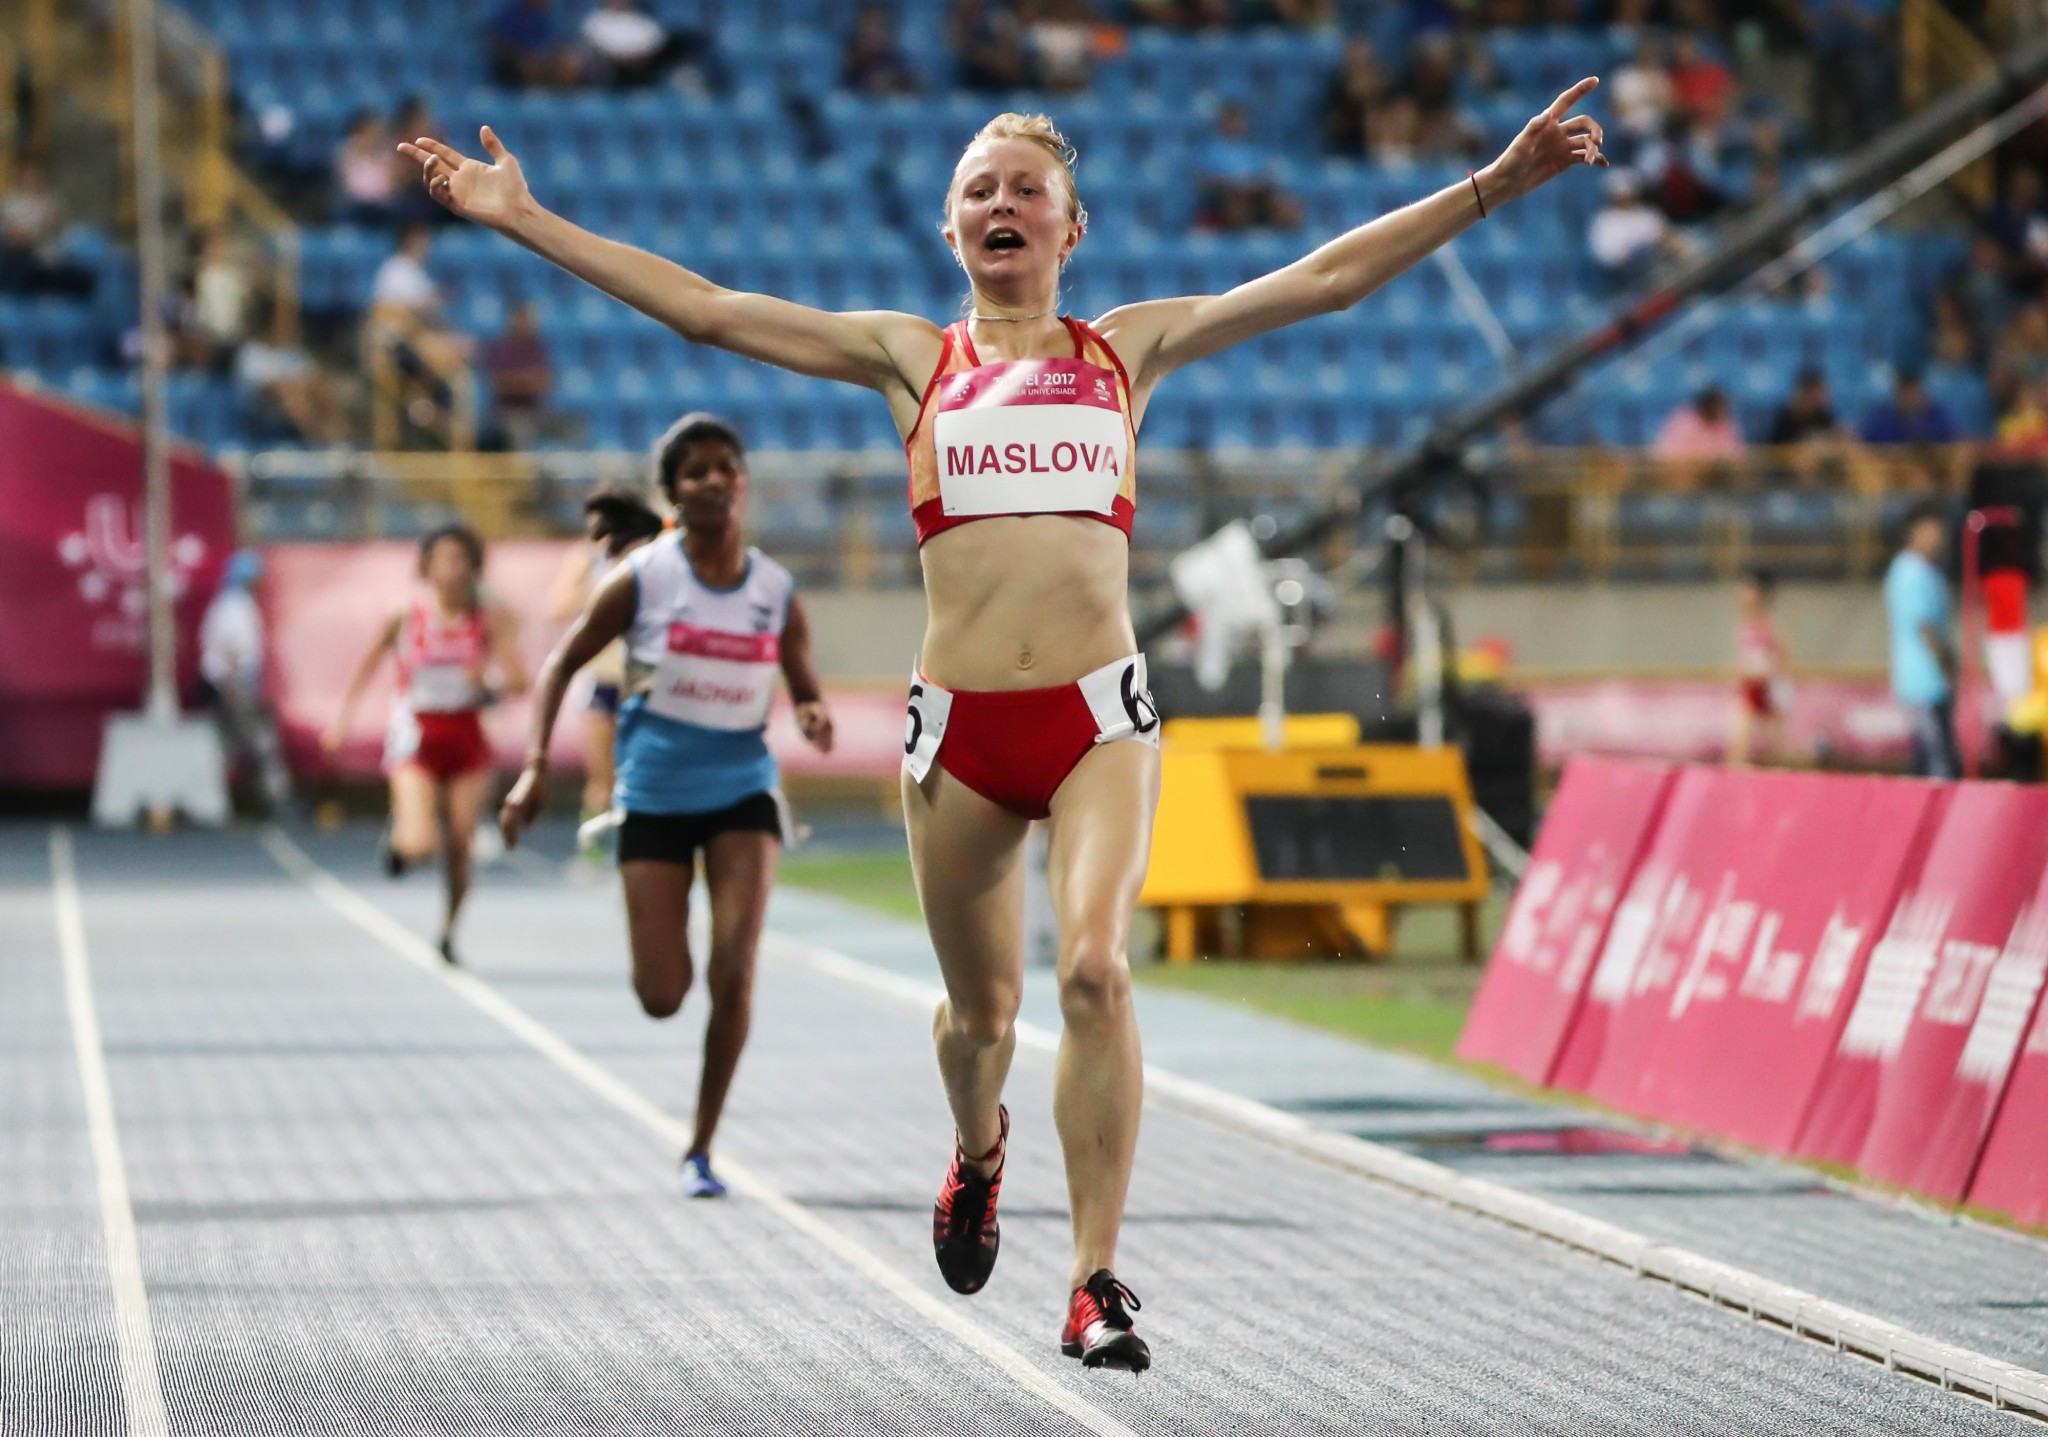 Daria Maslova won the women's 10,000m gold medal ©Taipei 2017